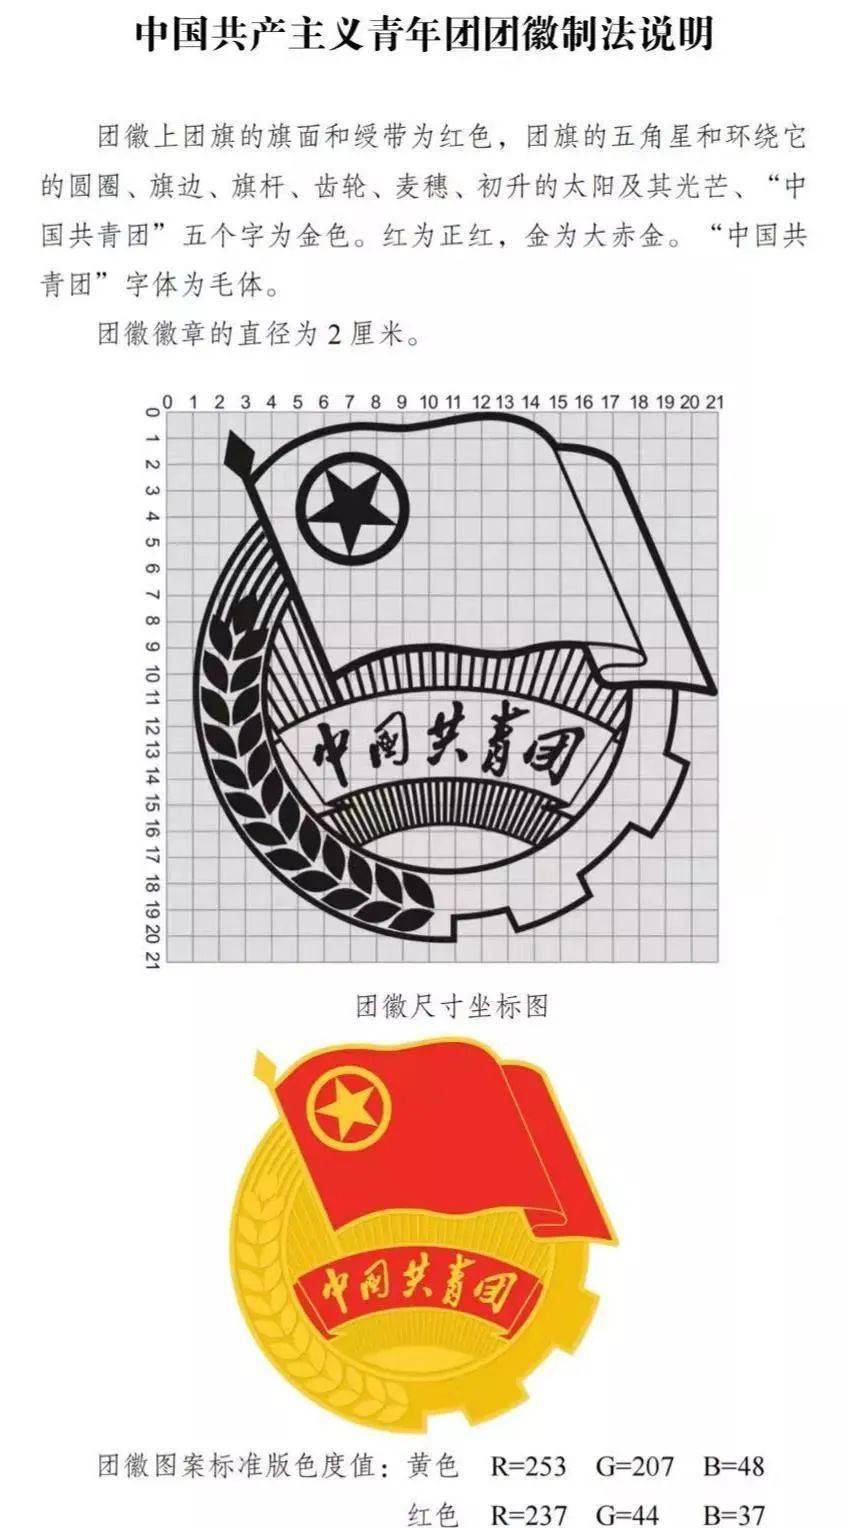 注意规范使用中国共产主义青年团团旗团徽